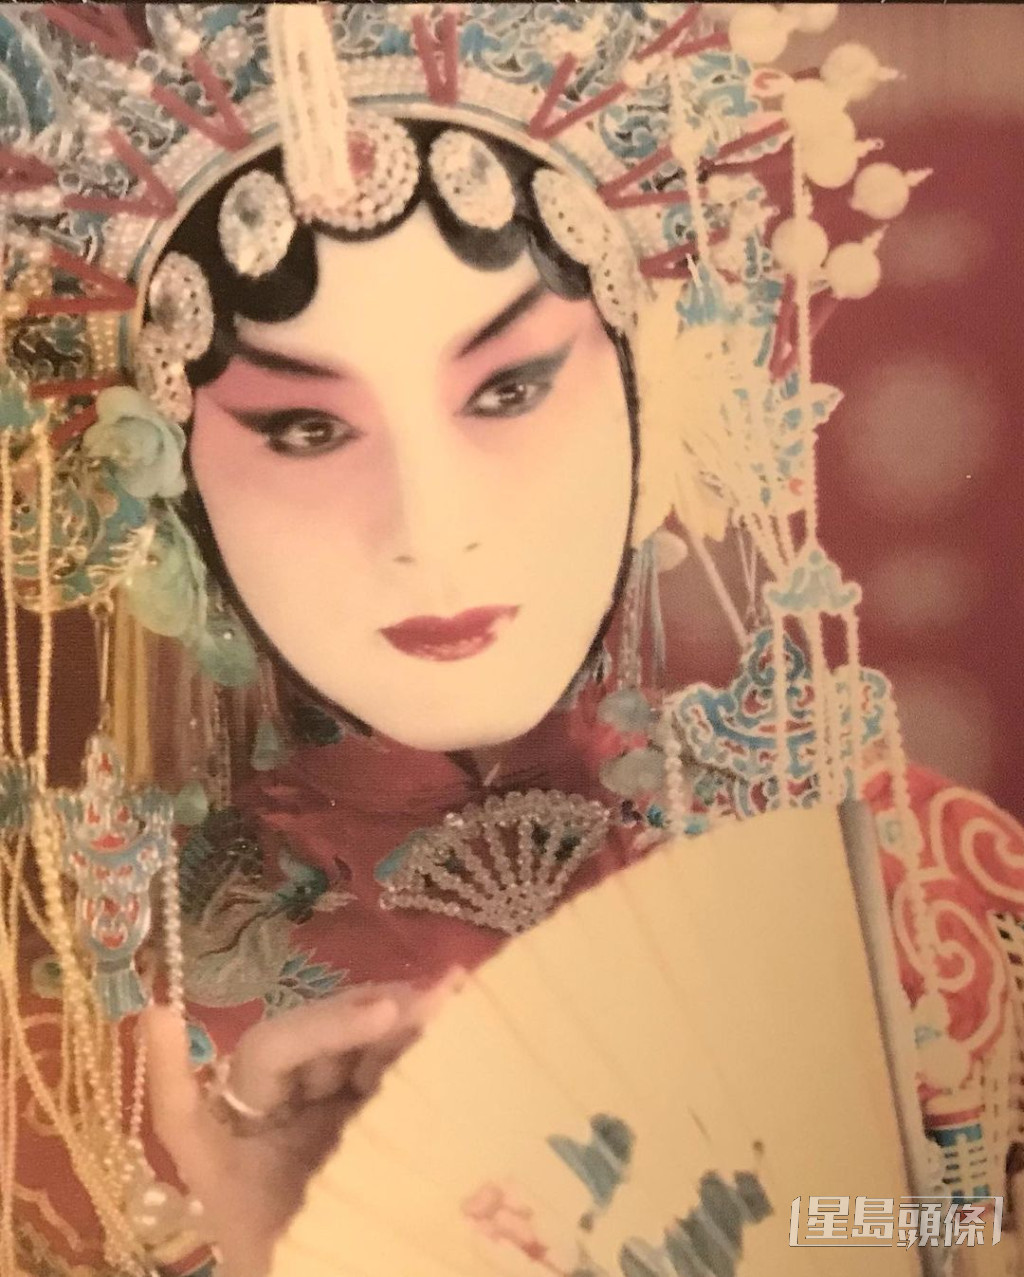 唐鹤德分享了张国荣的经典电影造型照。